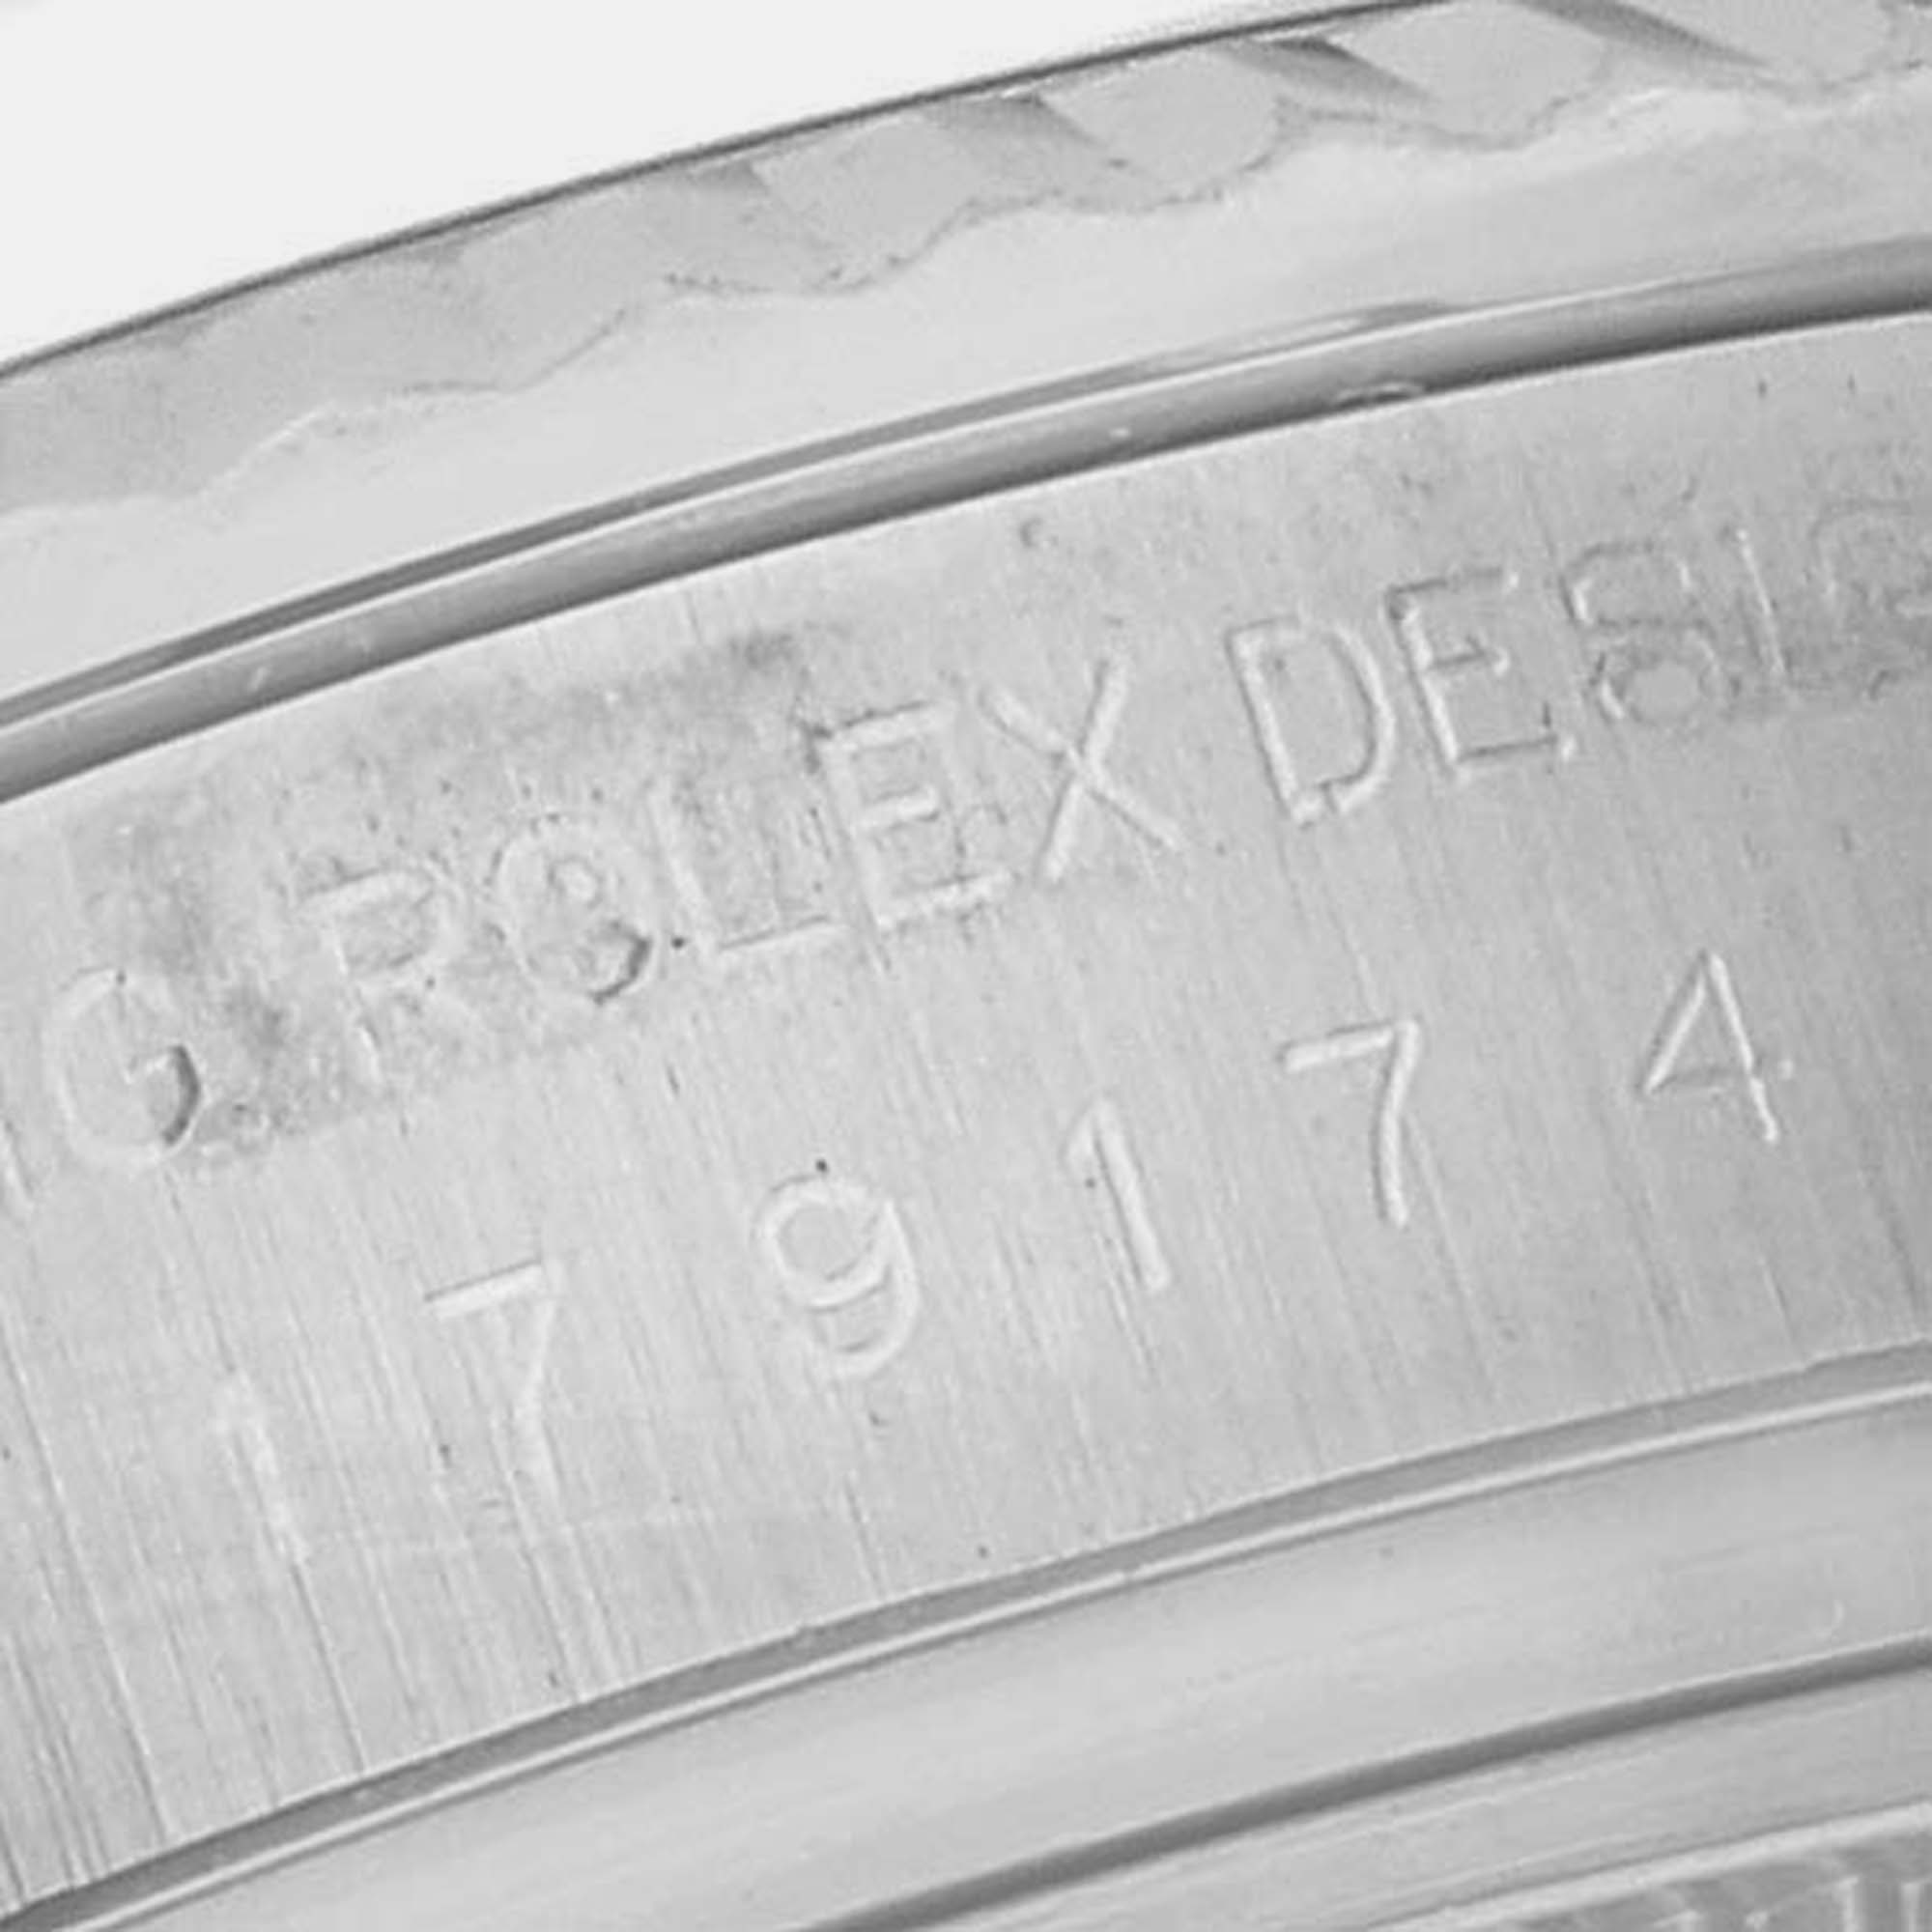 Rolex Datejust Steel White Gold Diamond Dial Ladies Watch 179174 26 Mm